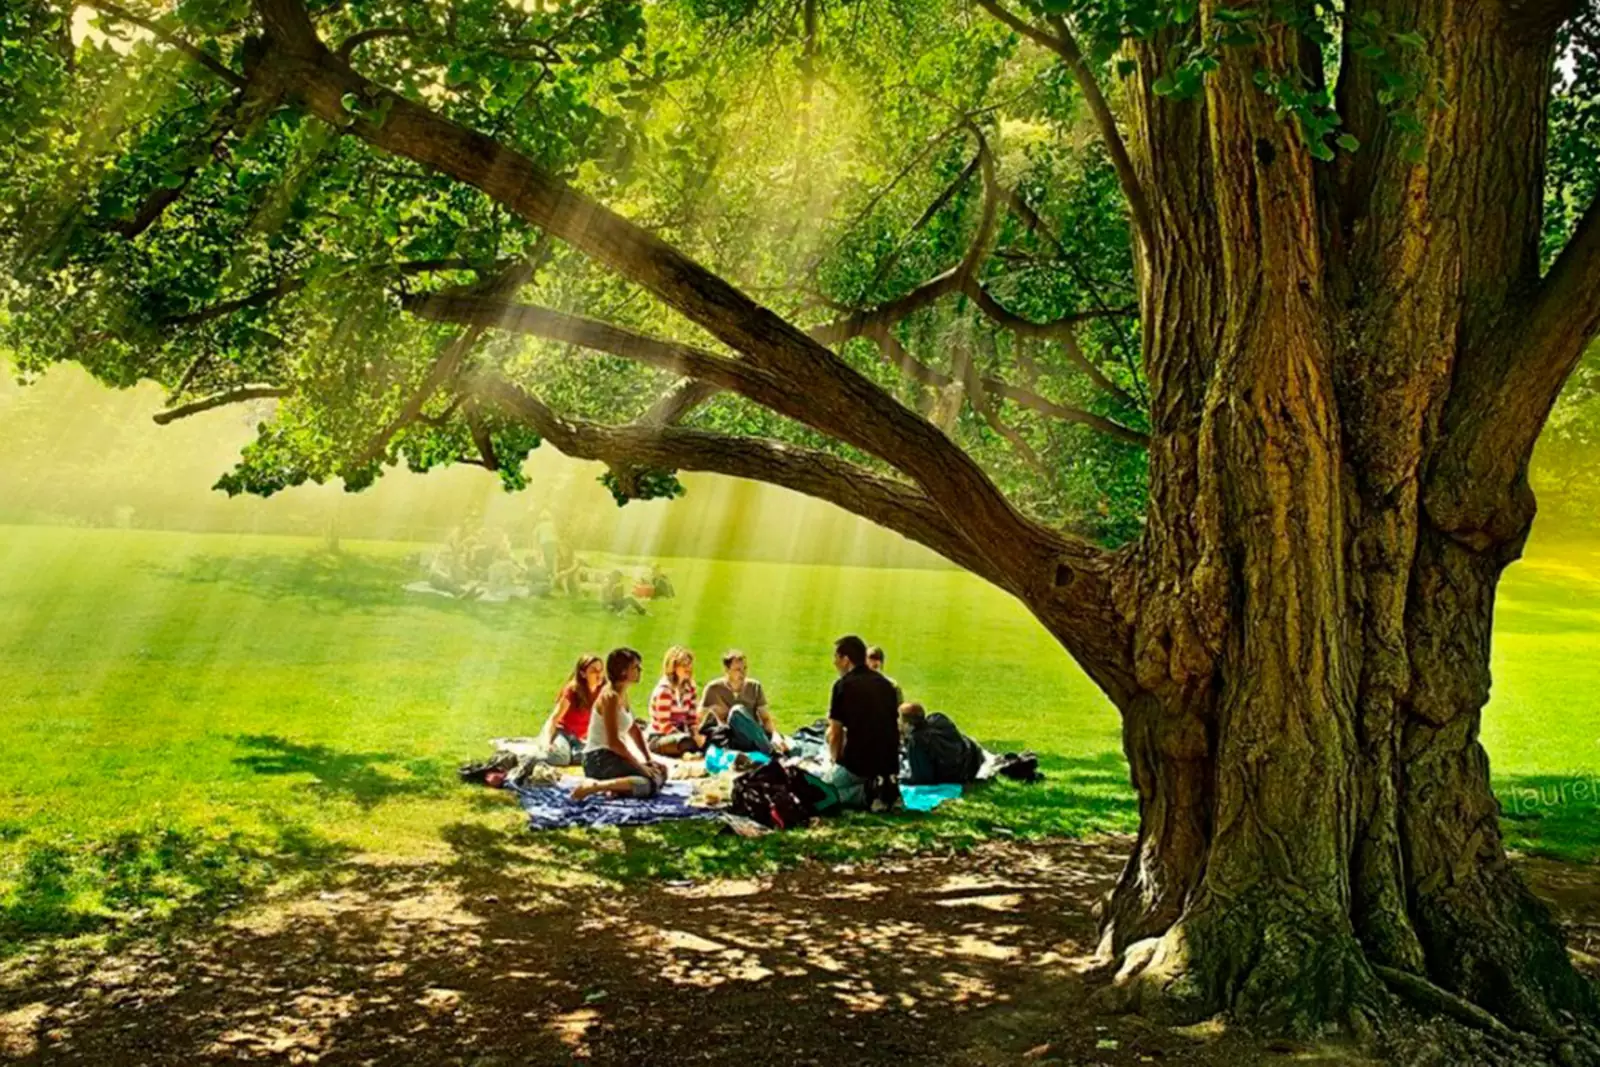 Природа и естественная жизнь. Пикник в лесу. Люди отдыхают на природе. Пикник под деревом. Человек и природа.